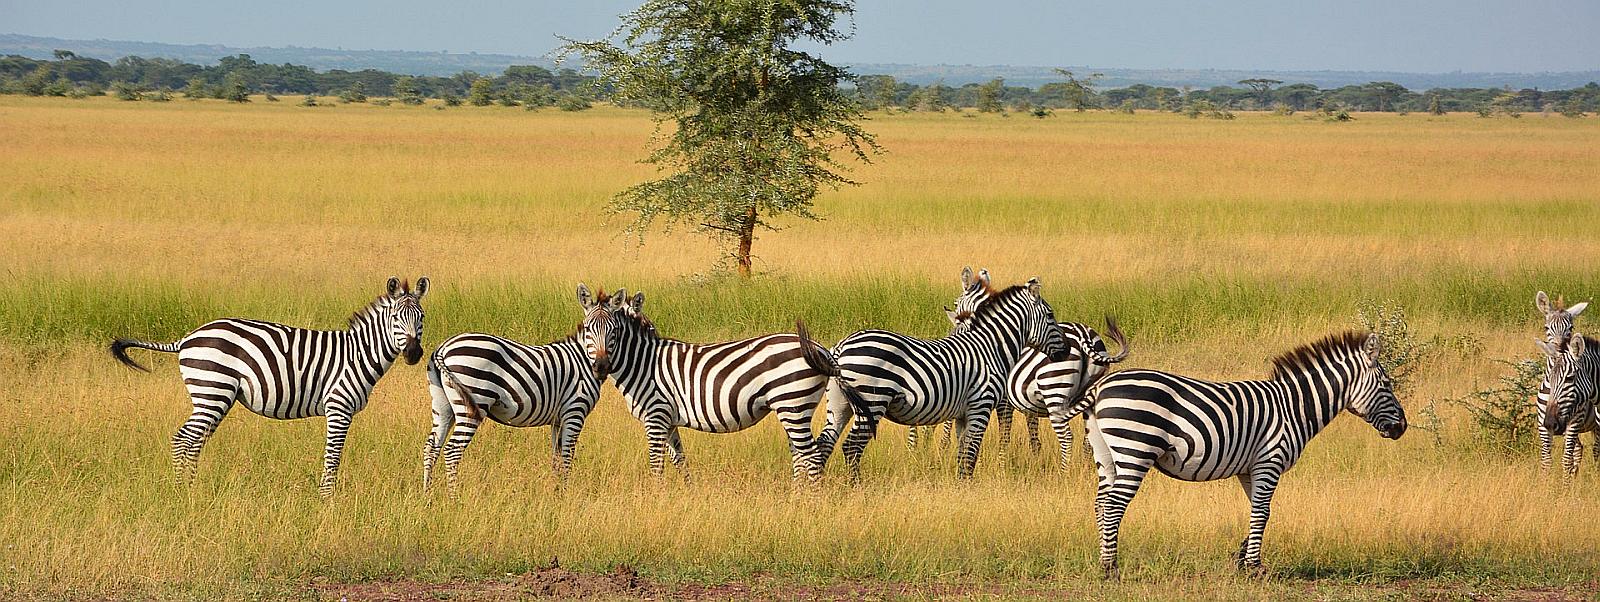 Safari Tansania - Serengeti